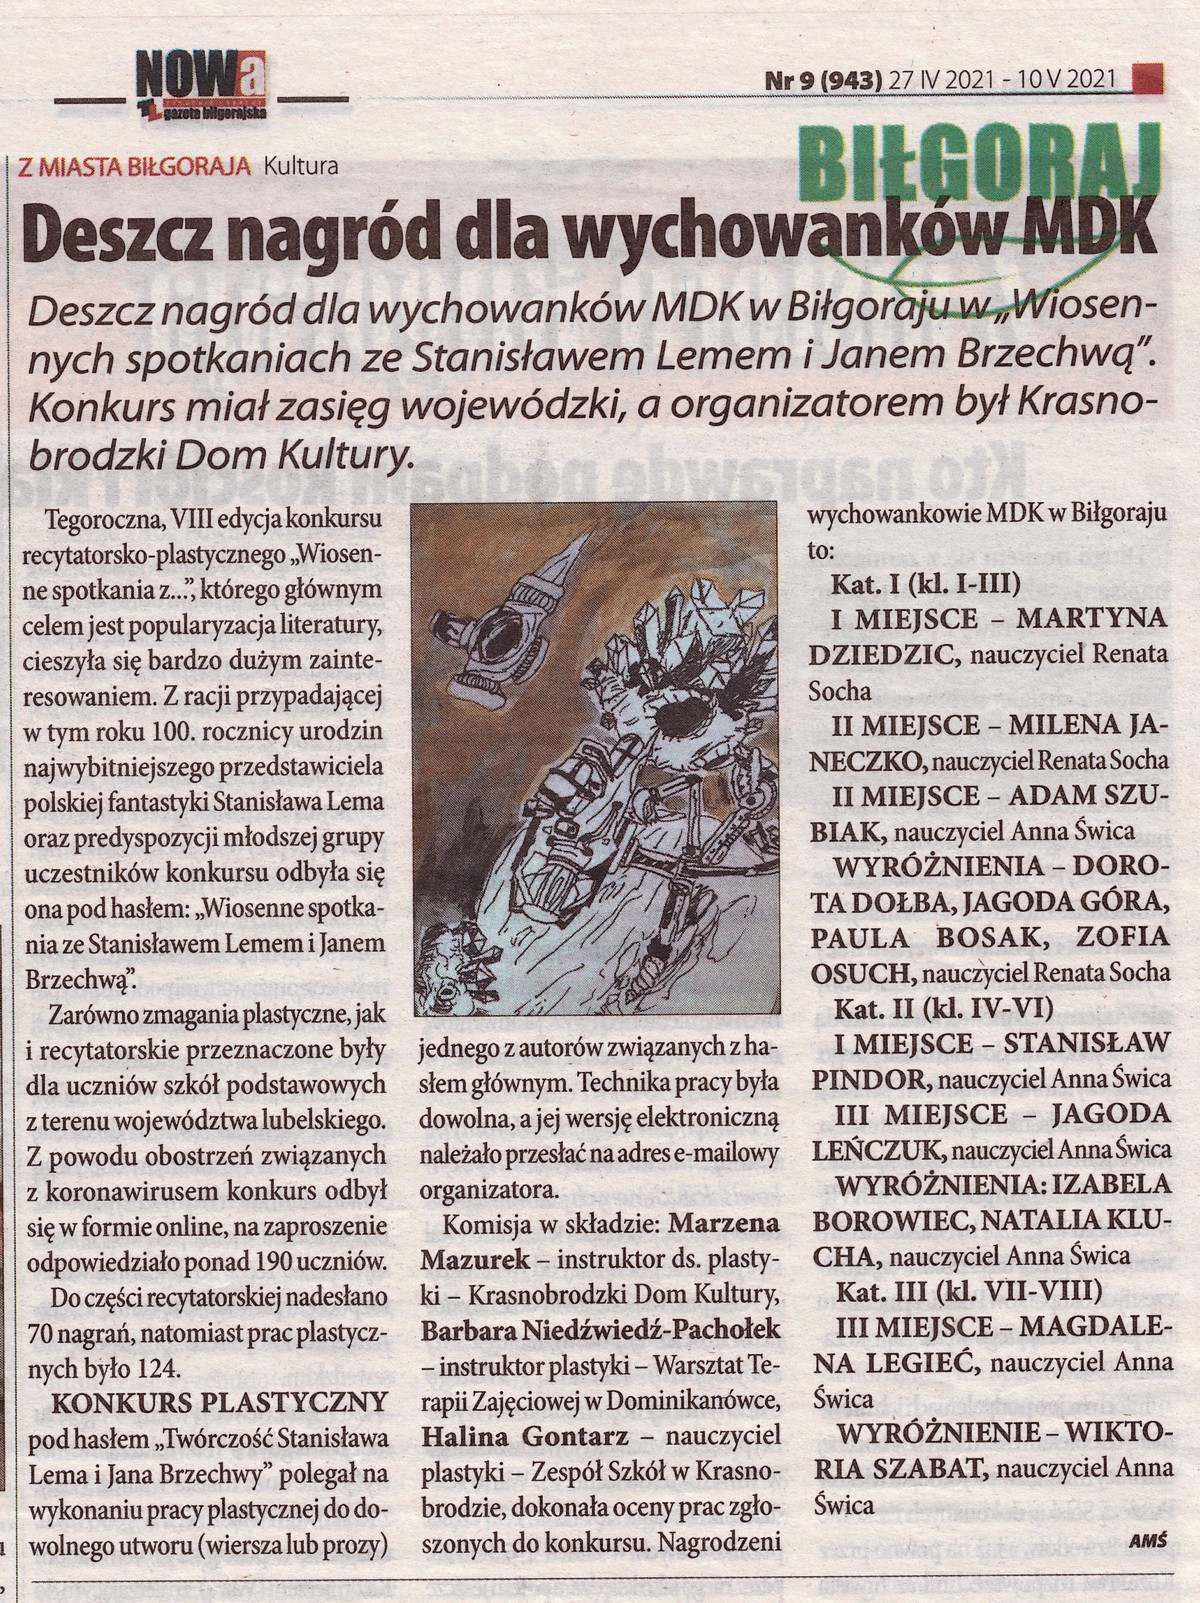 NOWA gazeta bigorajska - w artykule Deszczu nagrd dla wychowankw MDK